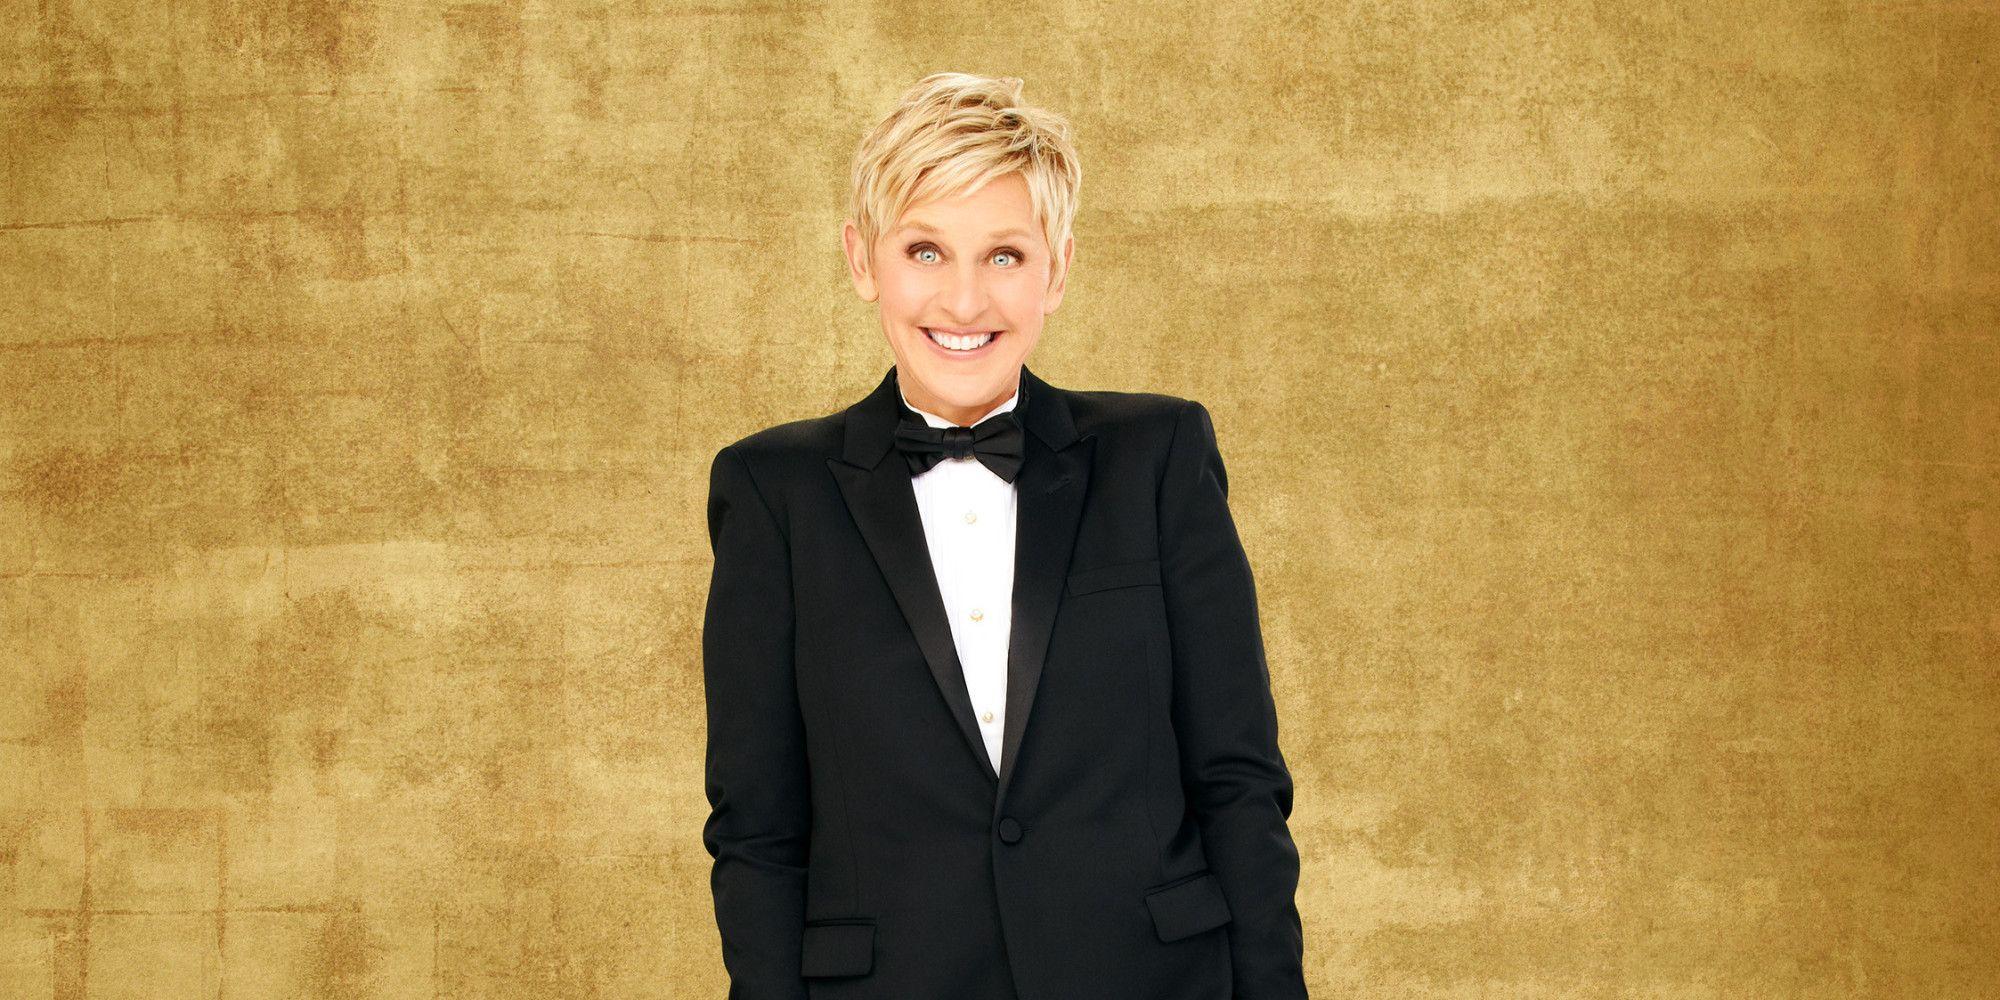 Ellen DeGeneres Wallpaper, Get Free top quality Ellen DeGeneres